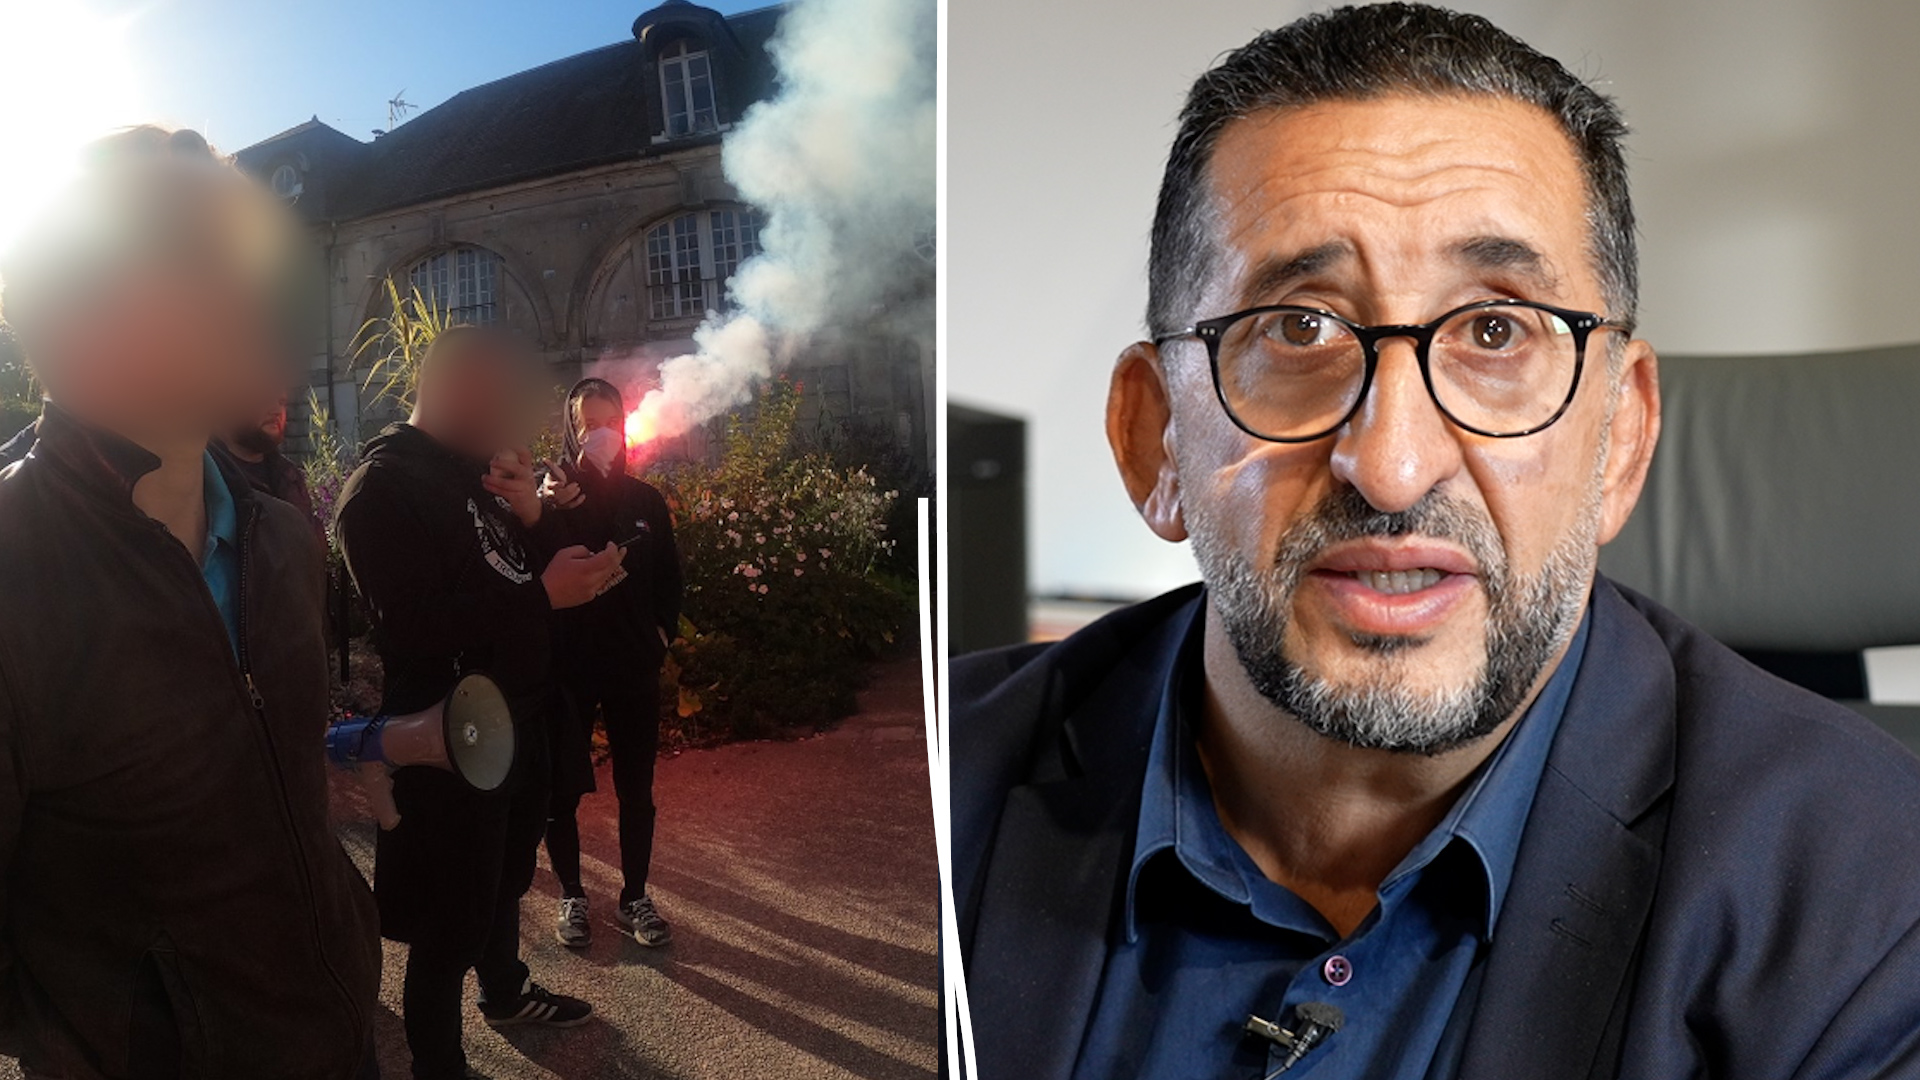 Dans un courrier envoyé cette semaine, le maire de Stains a demandé au ministre de l’Intérieur, Gérald Darmanin, la dissolution du groupuscule d’extrême droite Action française.